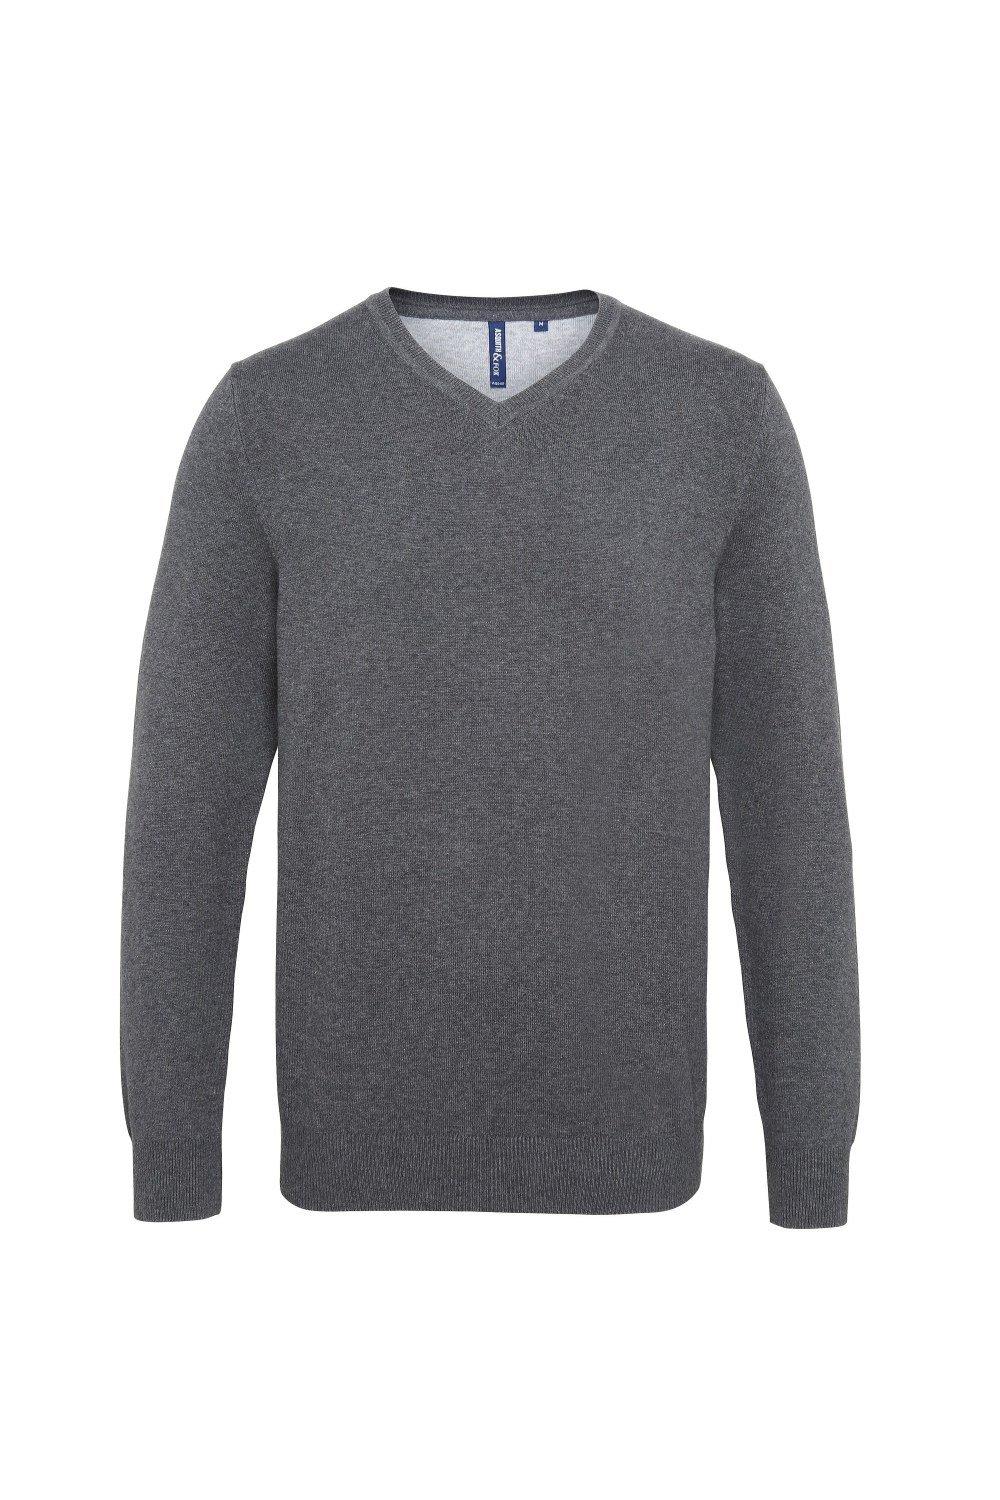 Хлопковый свитер с V-образным вырезом Asquith & Fox, серый